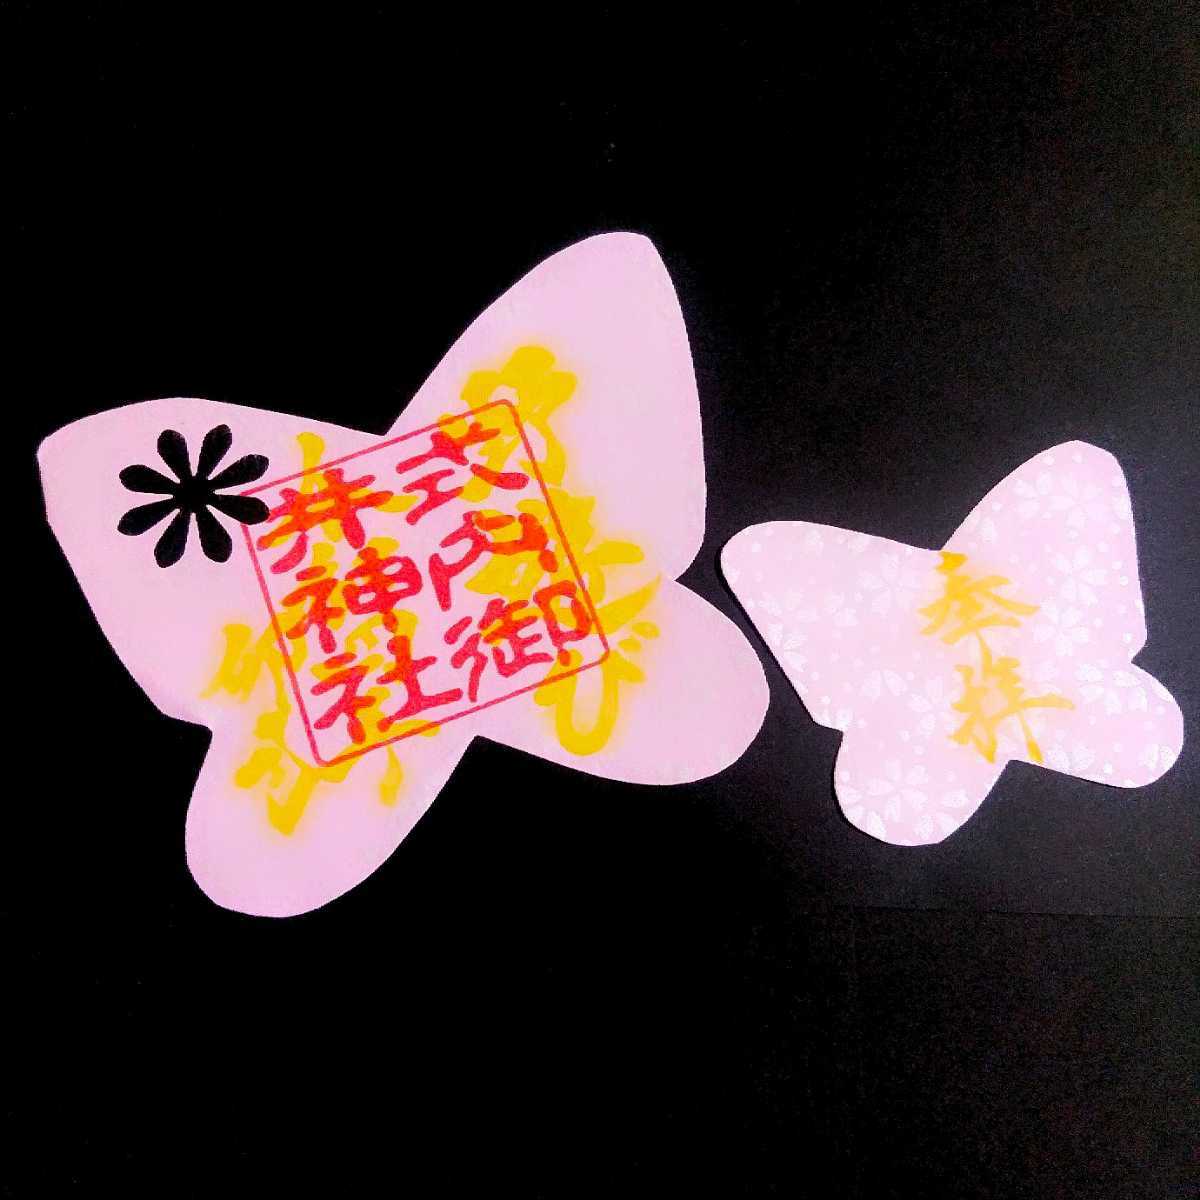 [SALE]{ катануки * бабочка комплект }[ Gifu .. бог фирма ( ограничение .. печать )] тканый рисовое поле доверие превосходящий : три . замок :amabie: Sakura : цветок видеть : цветок ...:...